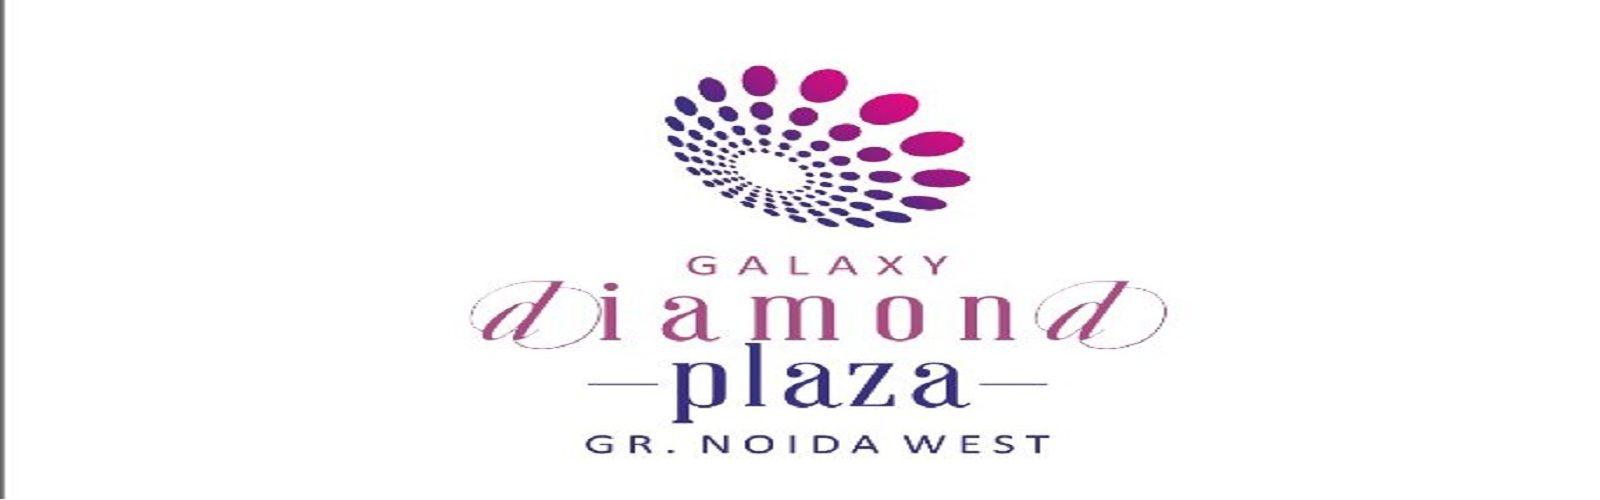 Galaxy Diamond Logo - Galaxy Diamond Plaza